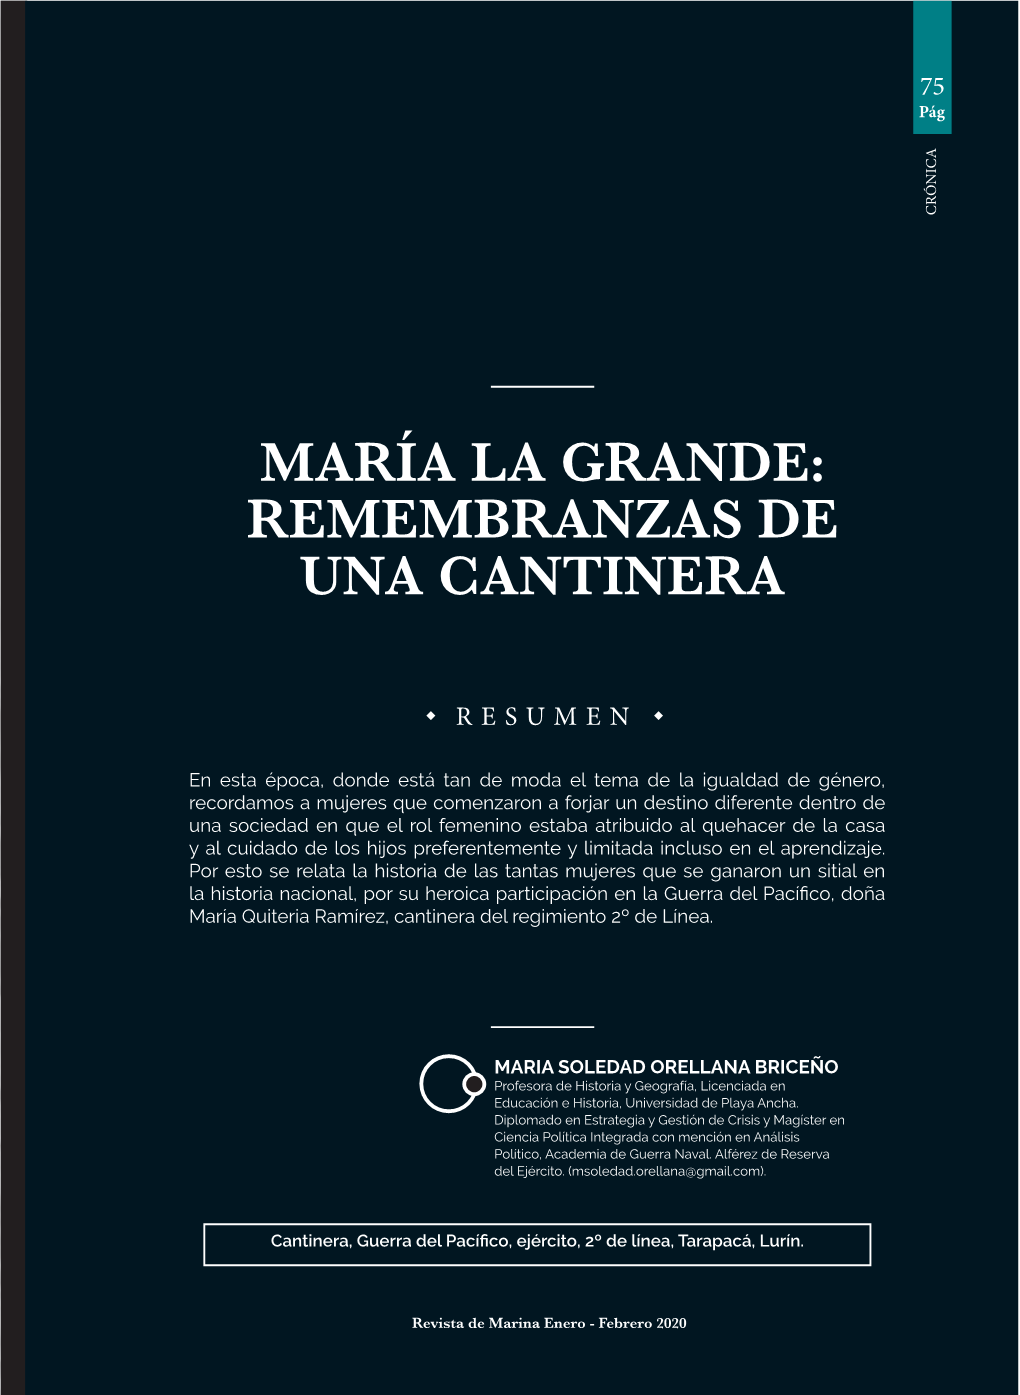 María La Grande: Remembranzas De Una Cantinera